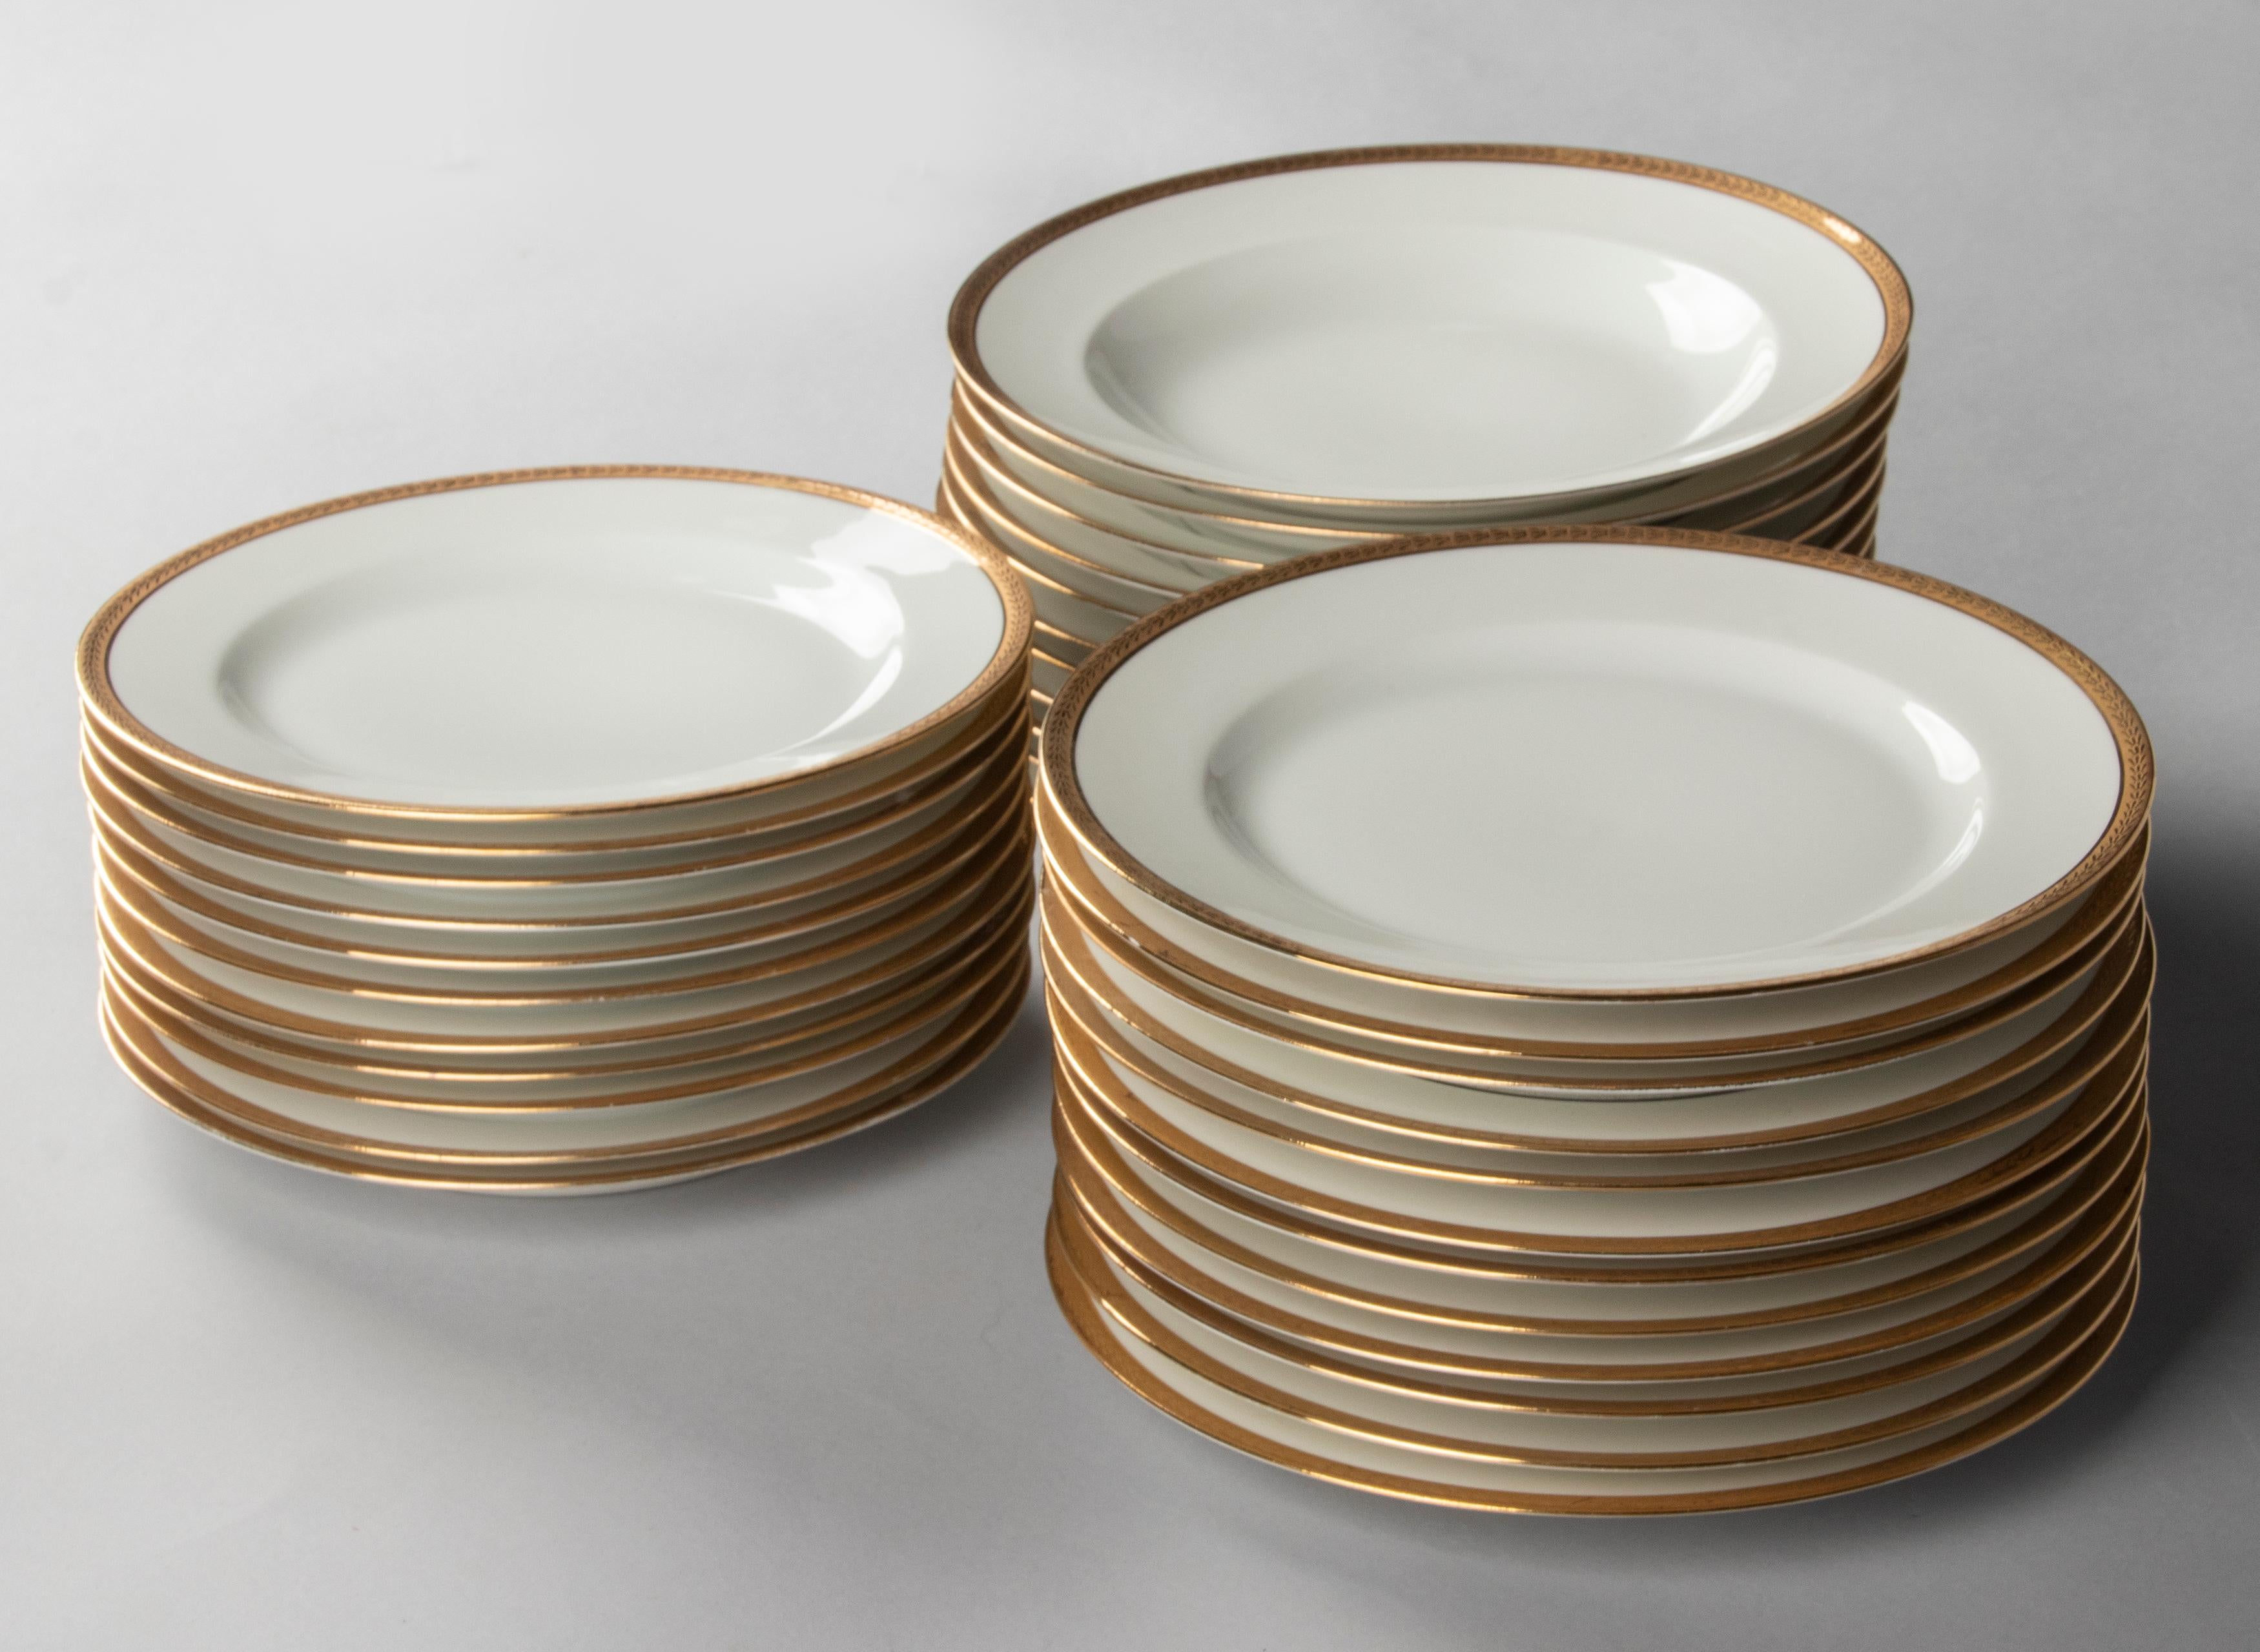 50-Piece Set Antique Porcelain Tableware by Lanternier Limoges Empire Style 1